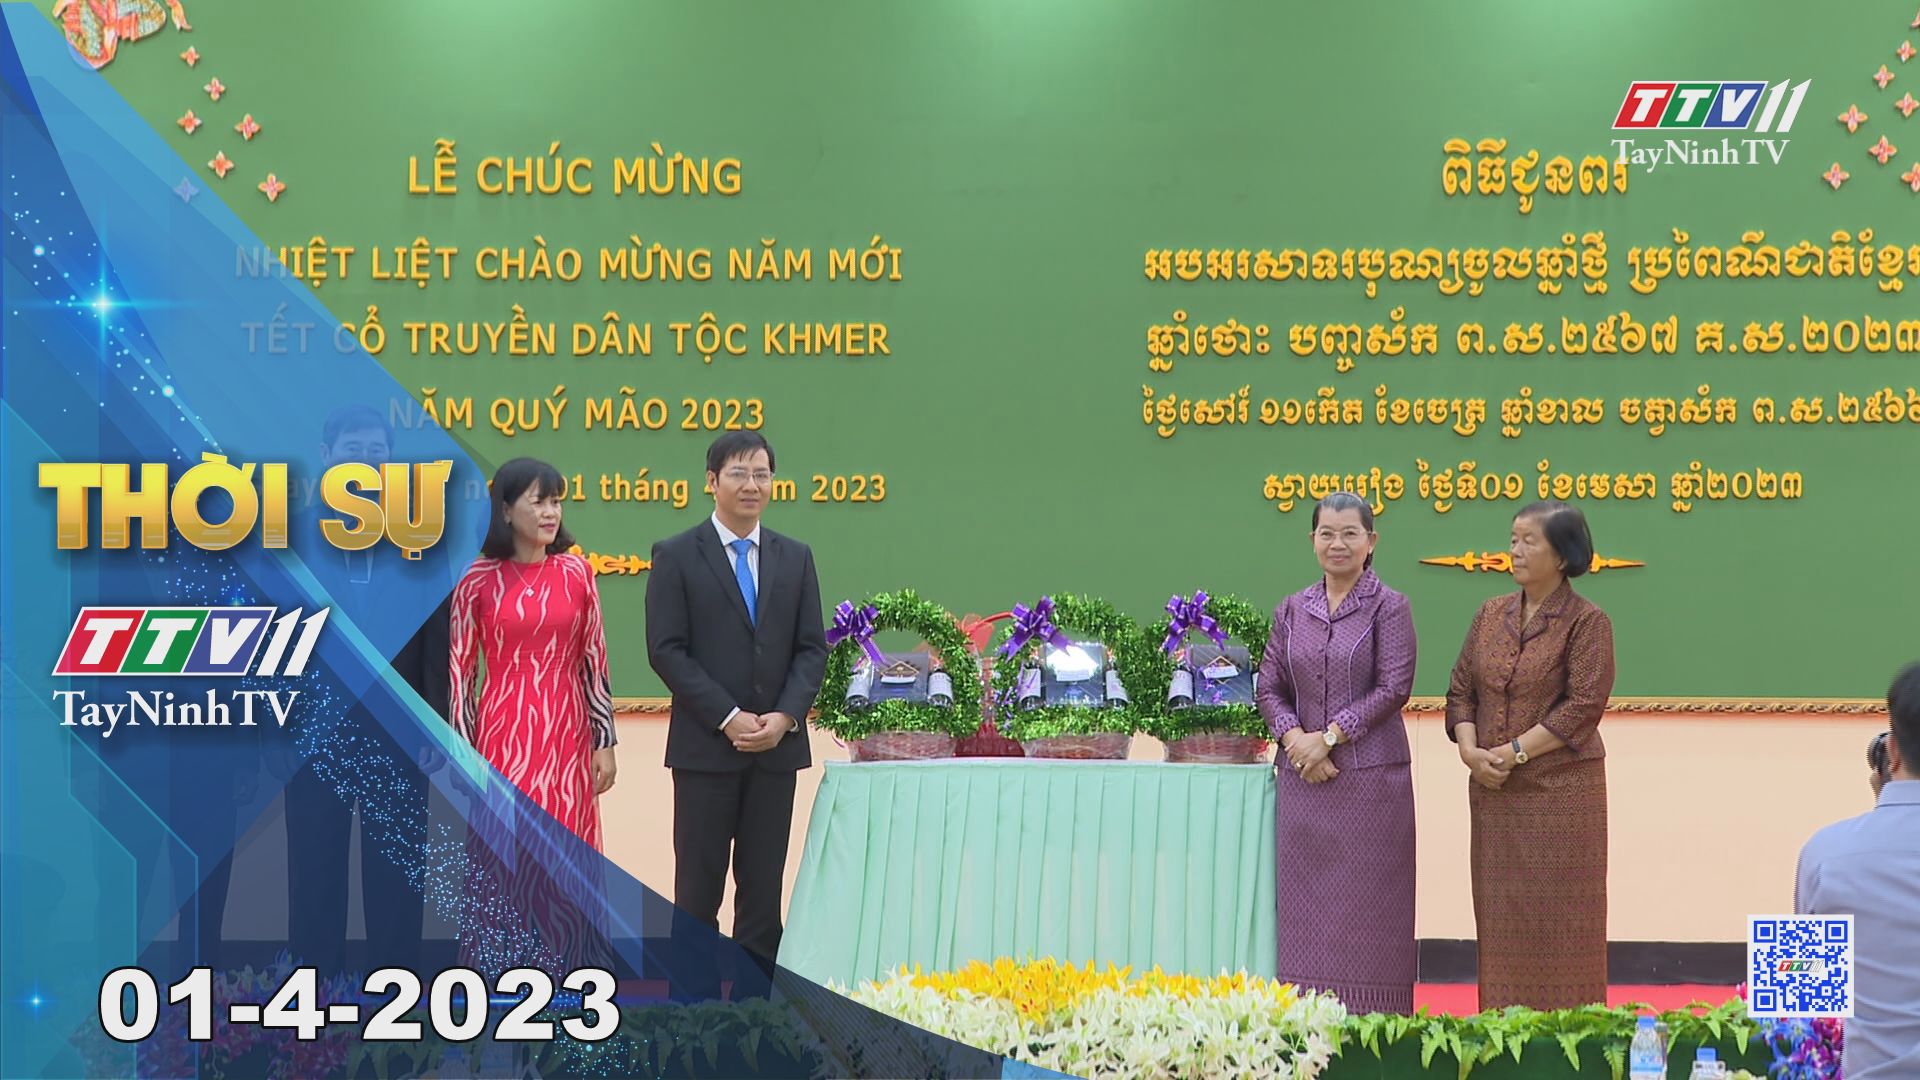 Thời sự Tây Ninh 01-4-2023 | Tin tức hôm nay | TayNinhTV